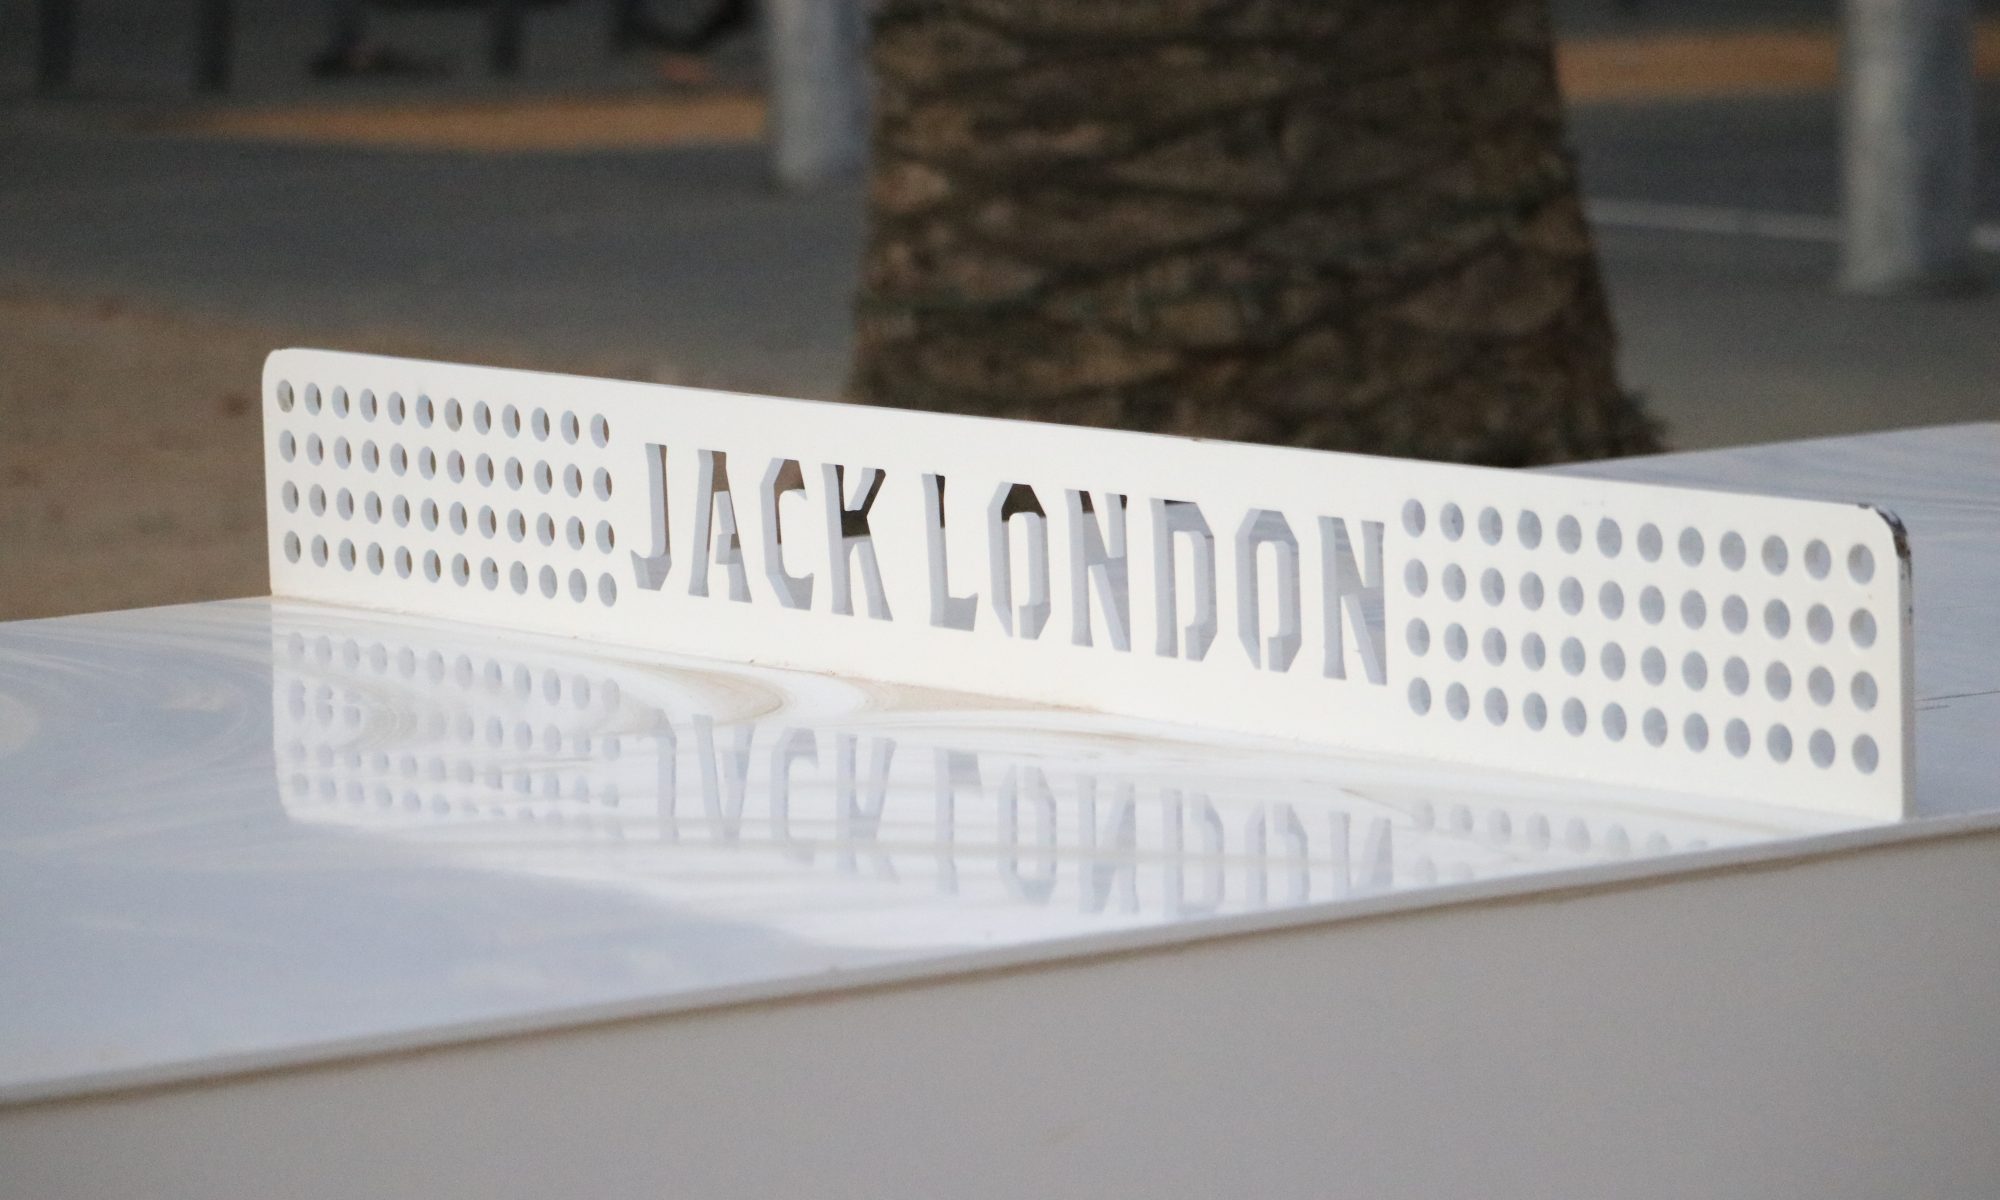 Jack London Square